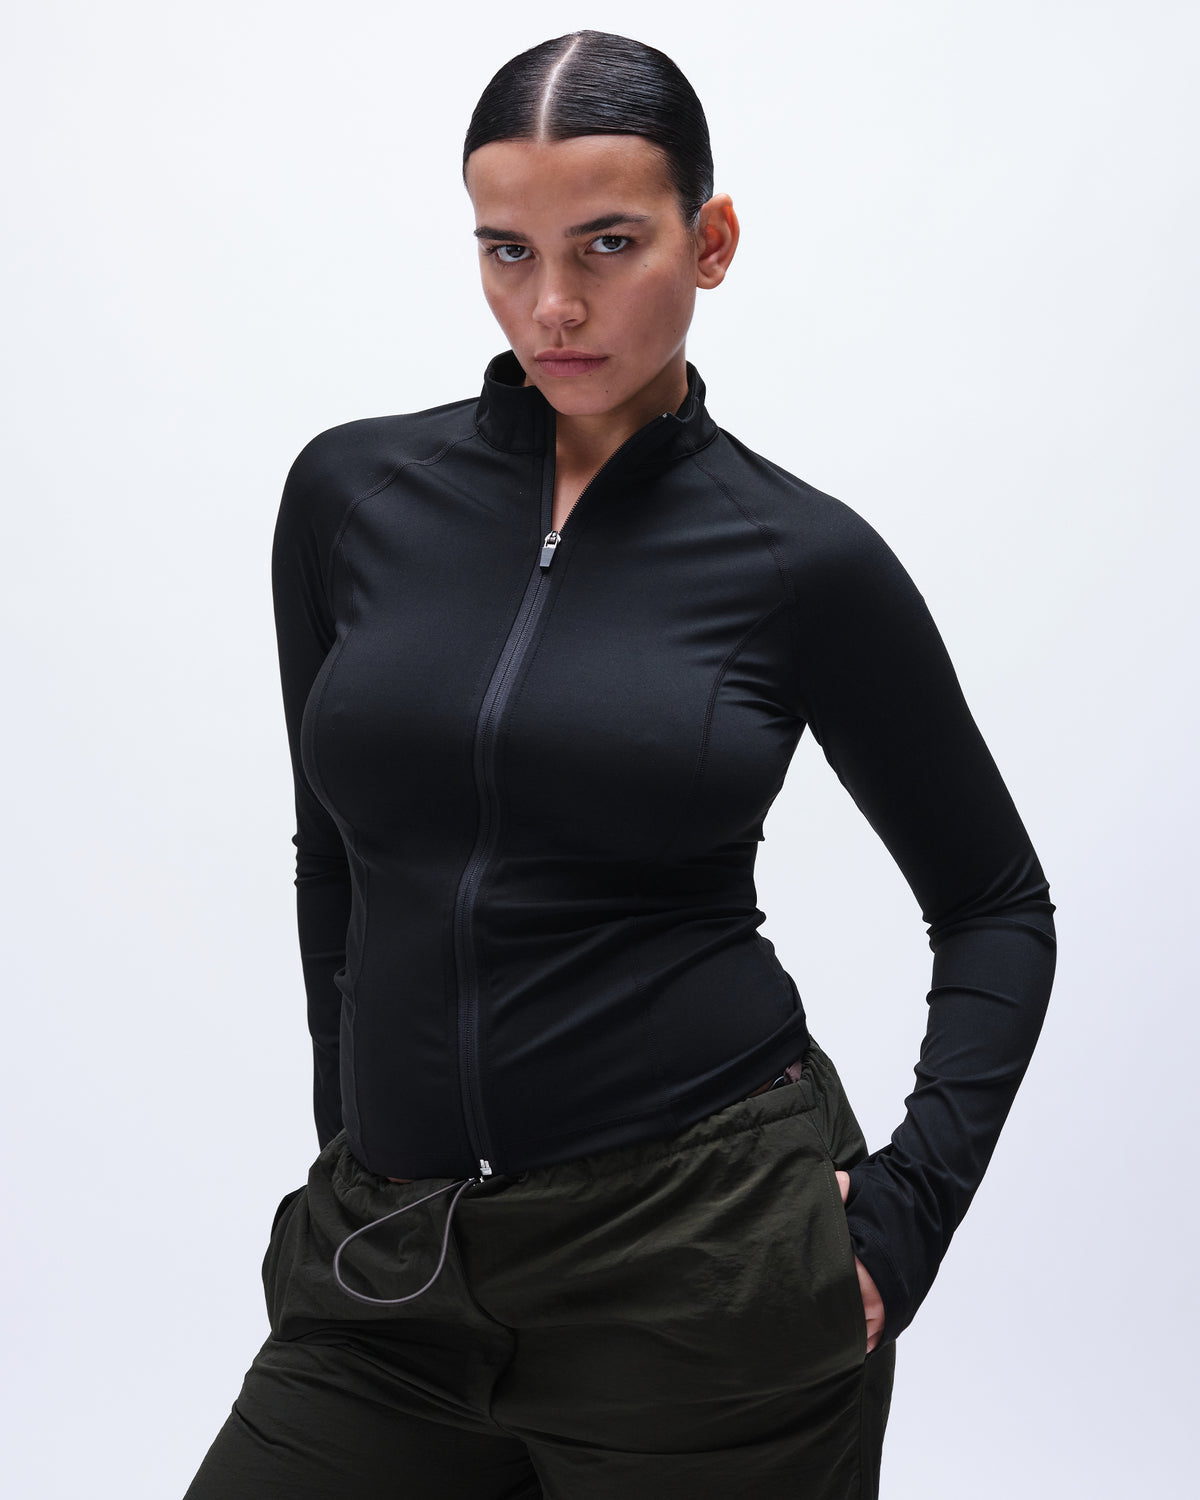 Sportswear Women Top sort sleeves M size brand Avia. Brand new